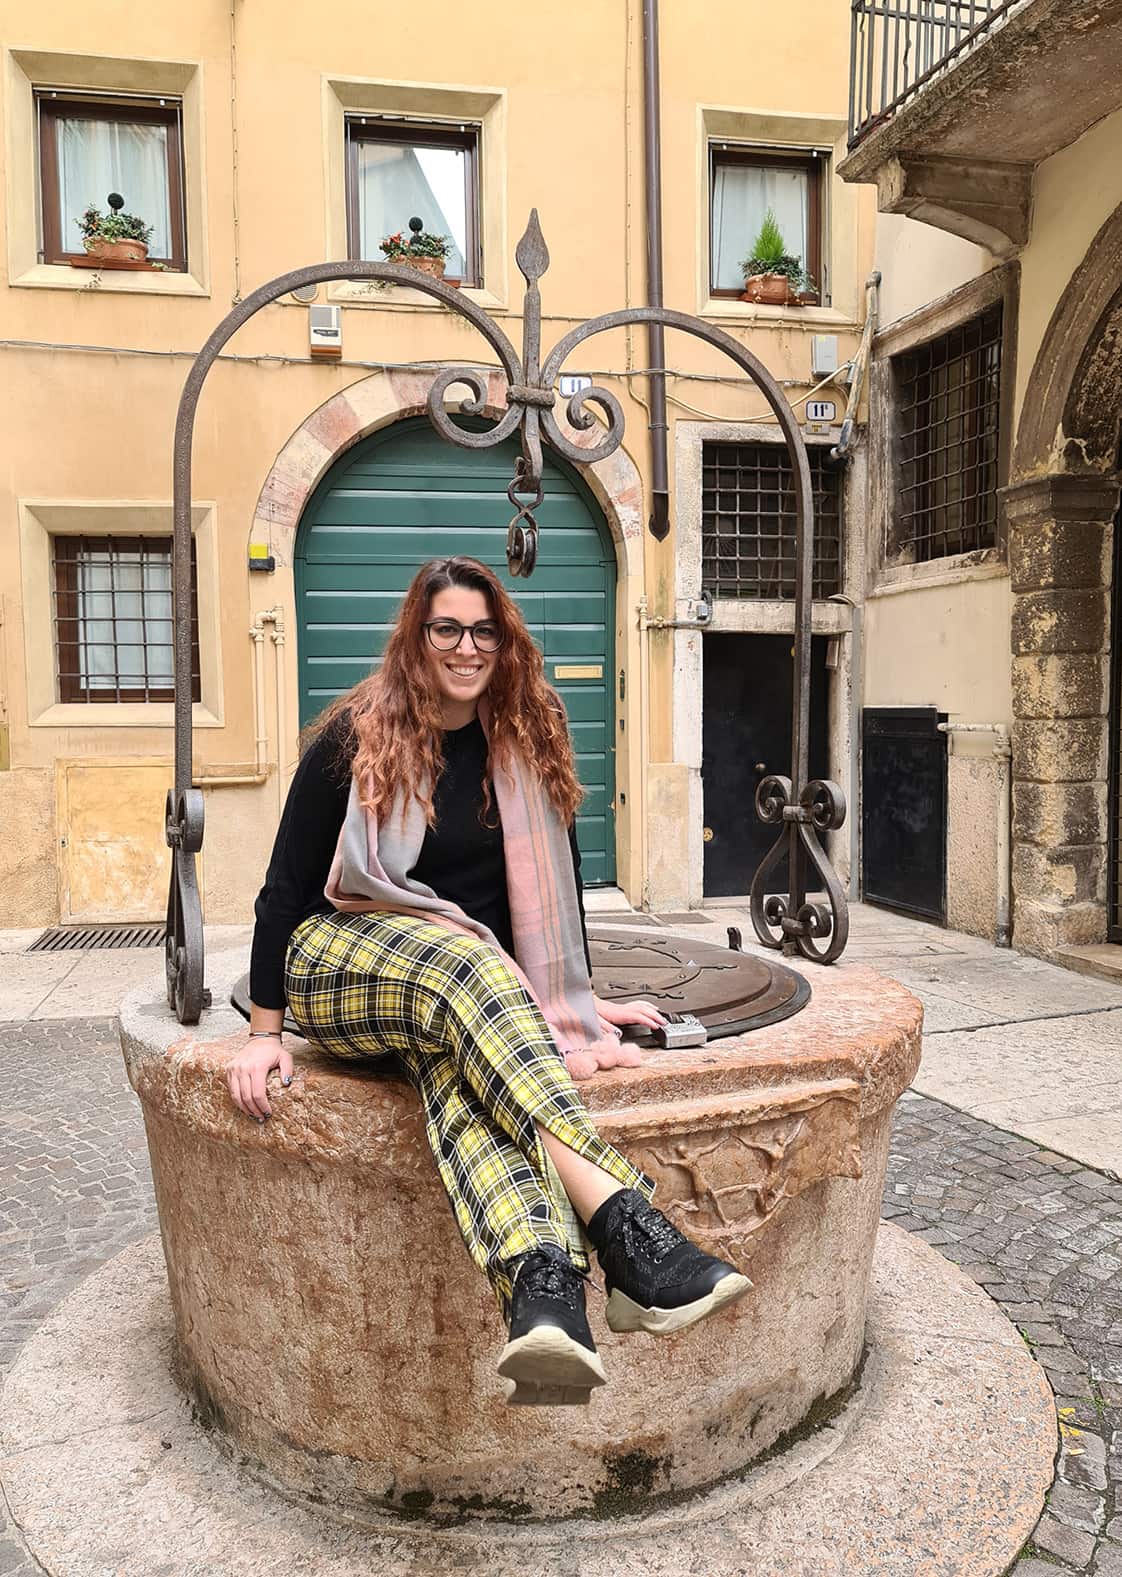 Carlotta sorridente, seduta su un pozzo in pietra, in un vicolo di questa Verona Insolita